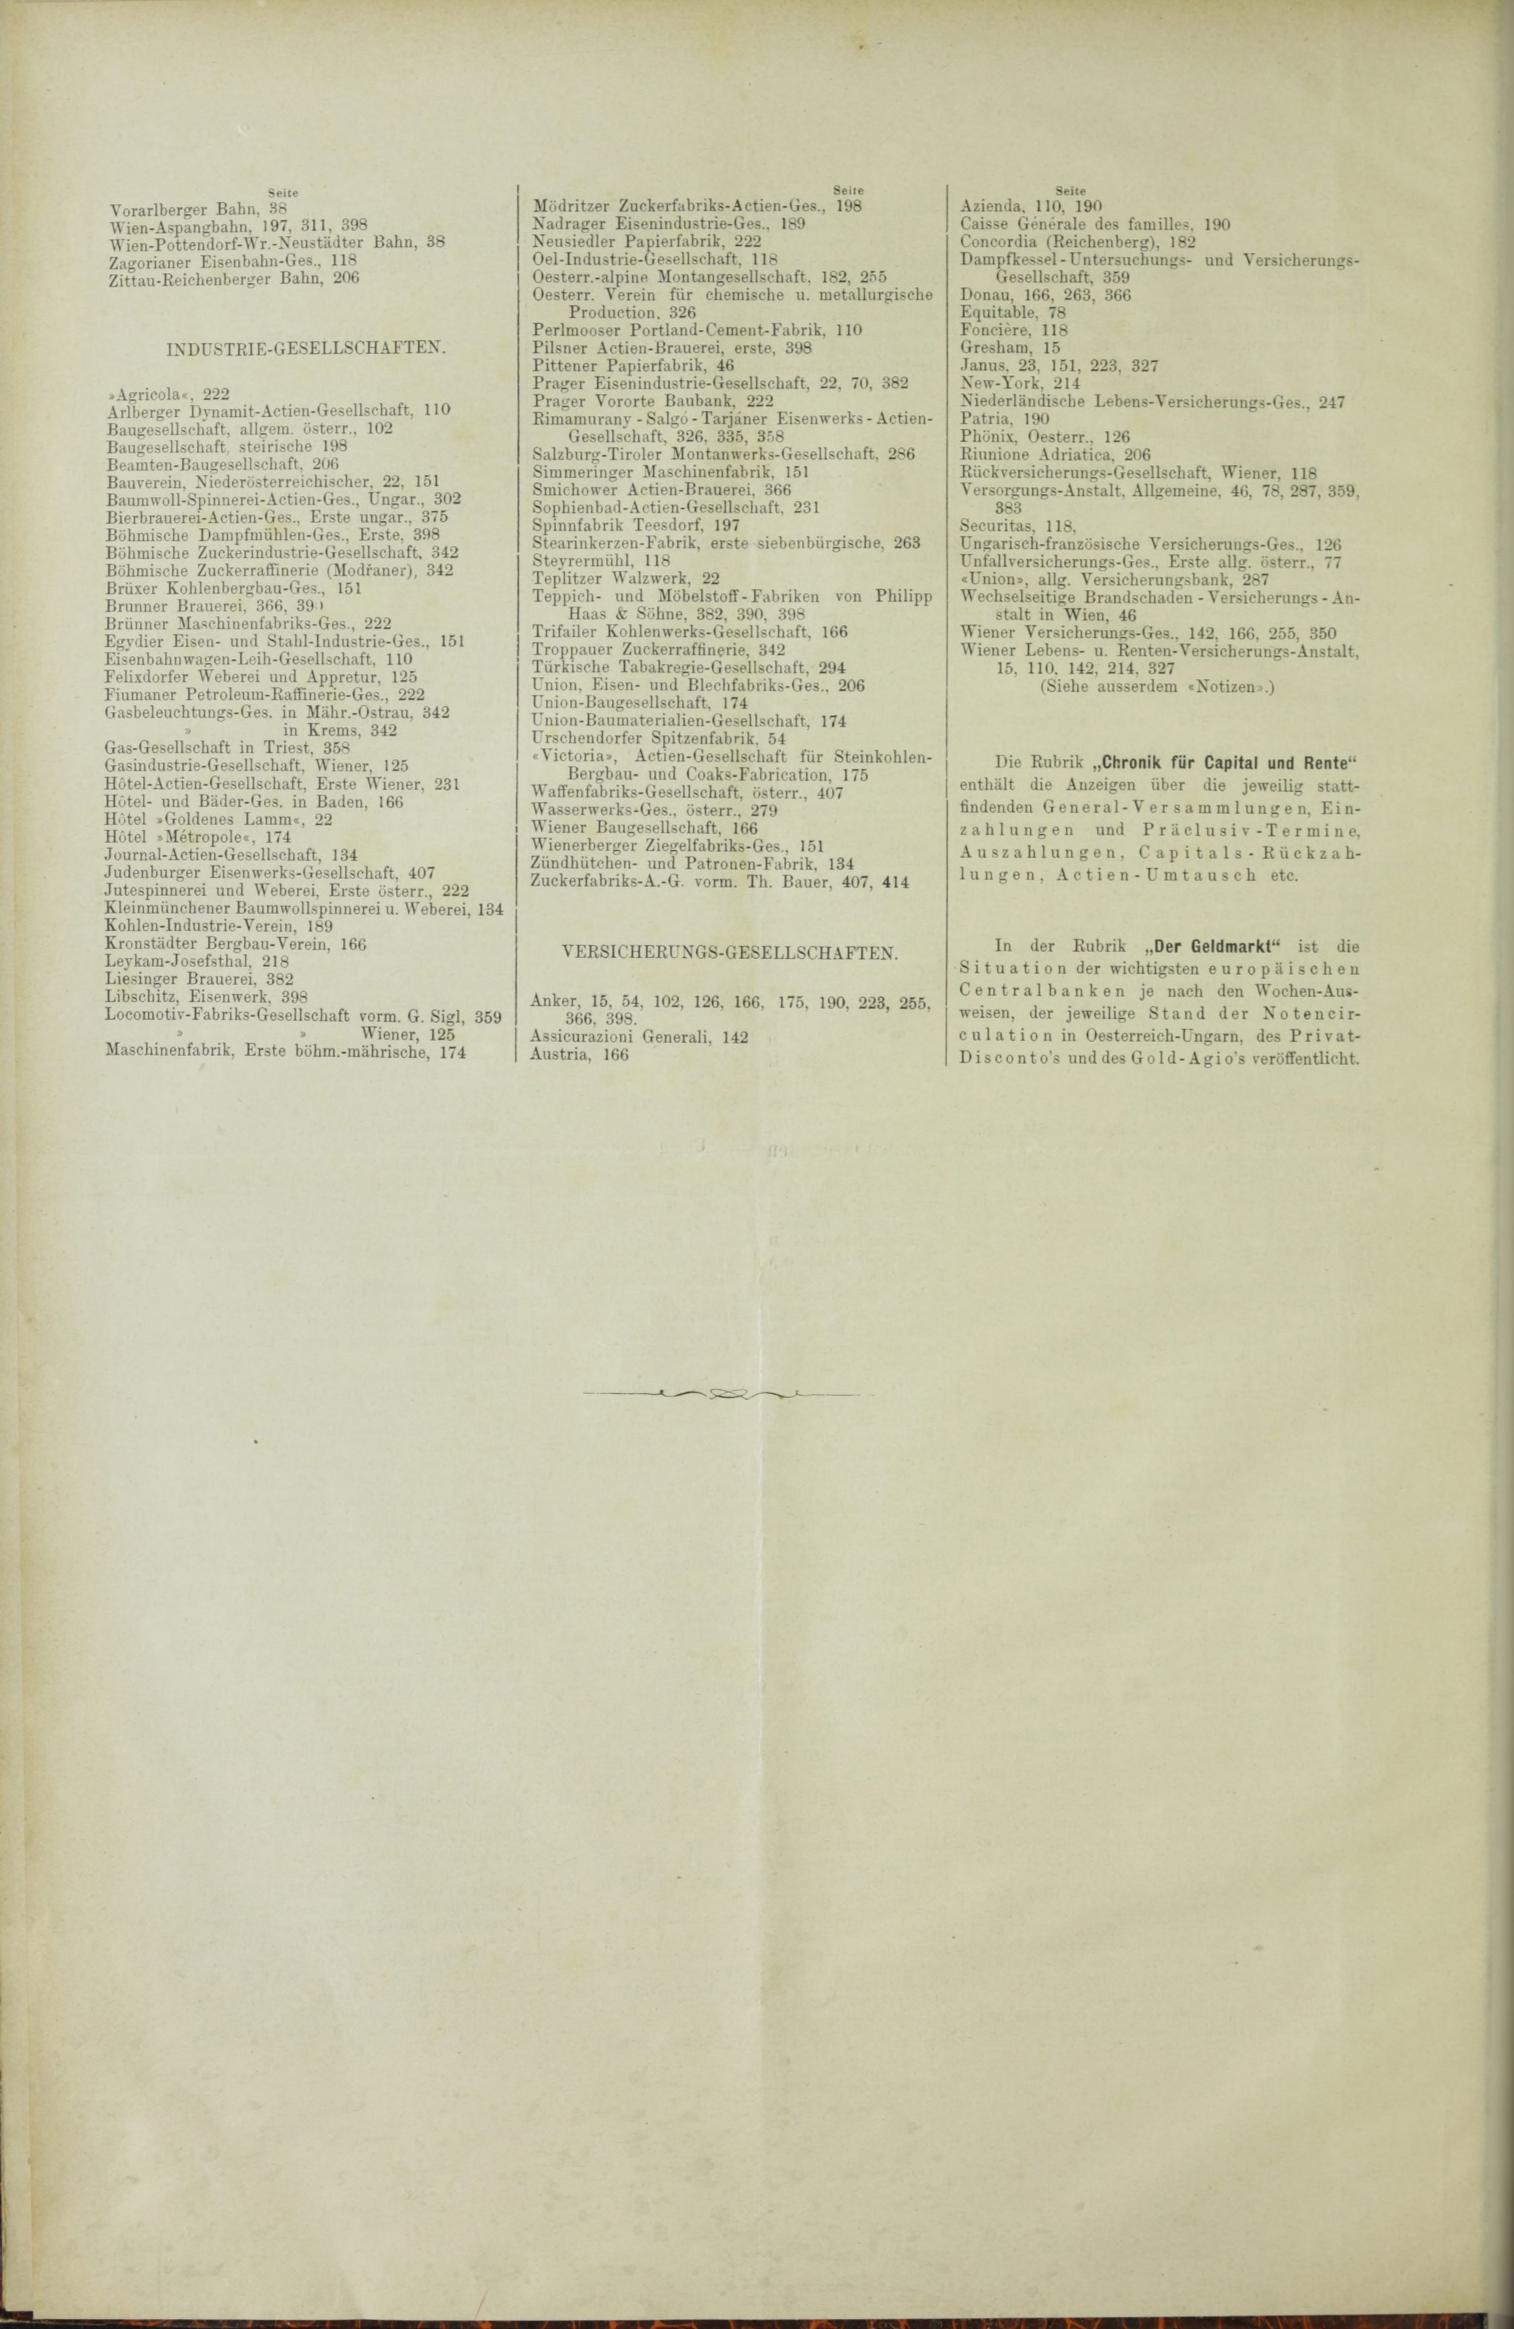 Der Tresor 04.11.1886 - Seite 12